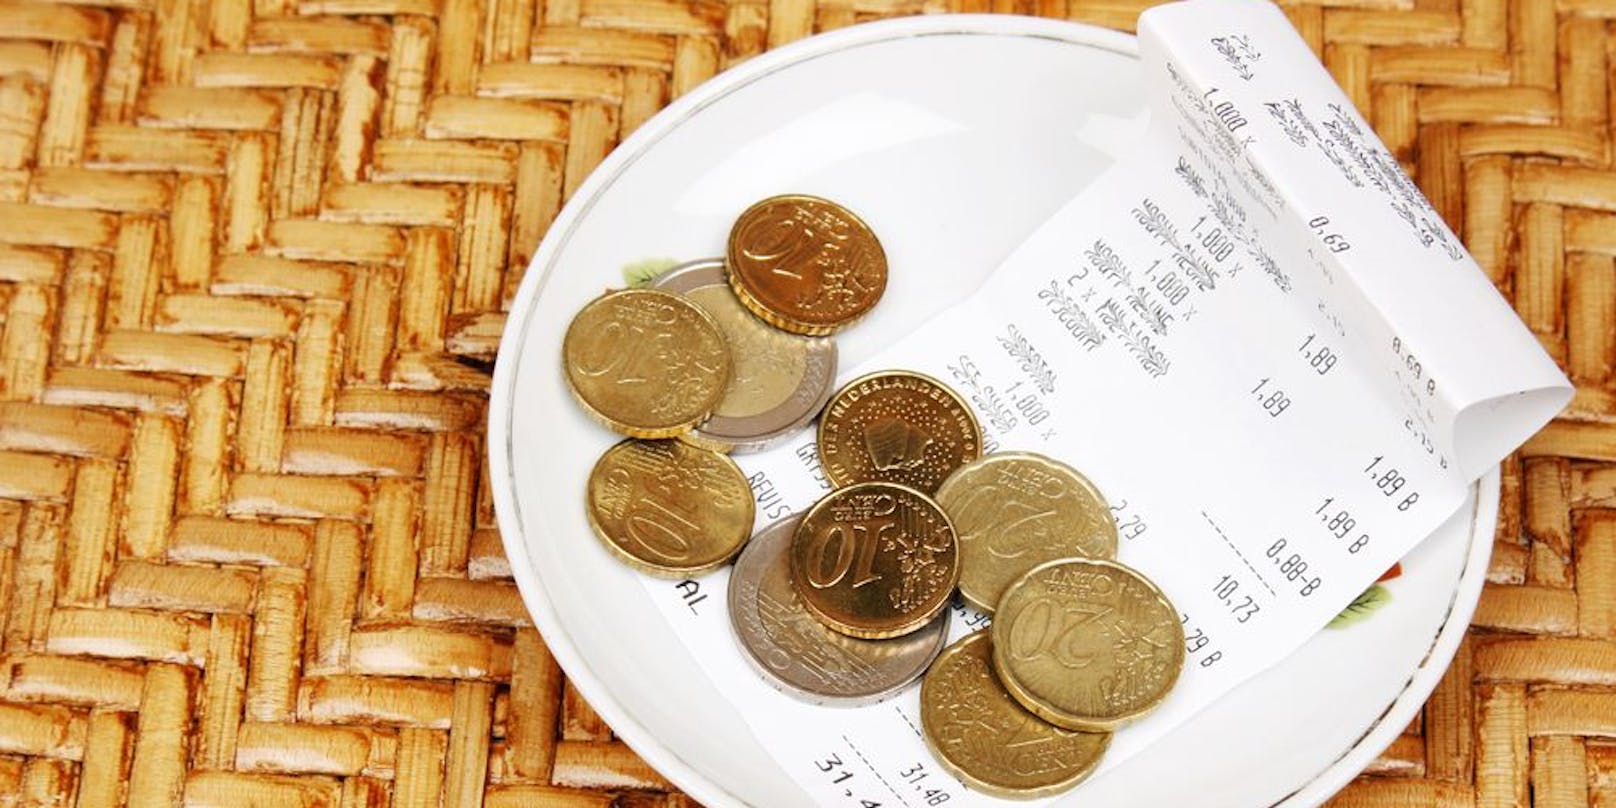 Immer mehr Menschen verzichten auf das Trinkgeld beim Restaurantbesuch.